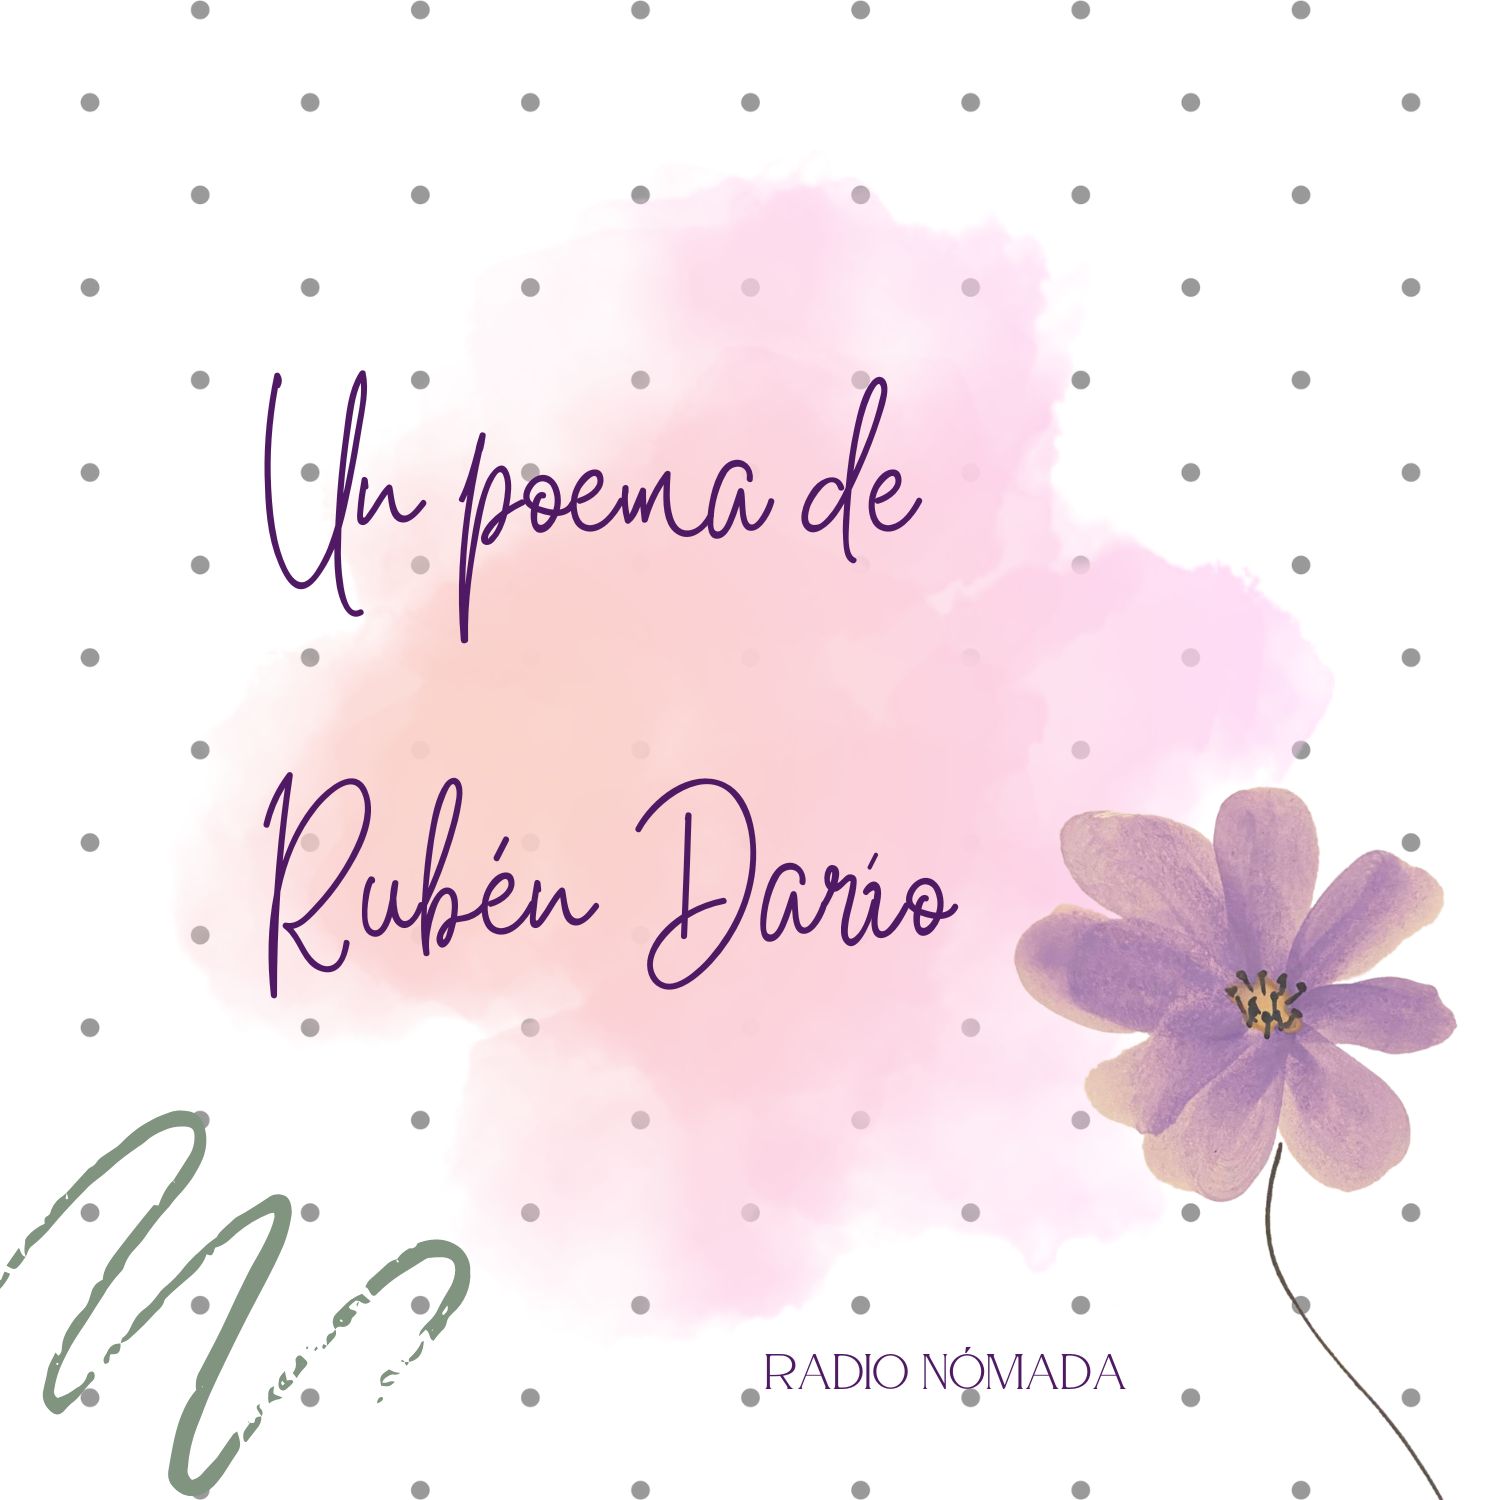 Un poema de Rubén Darío